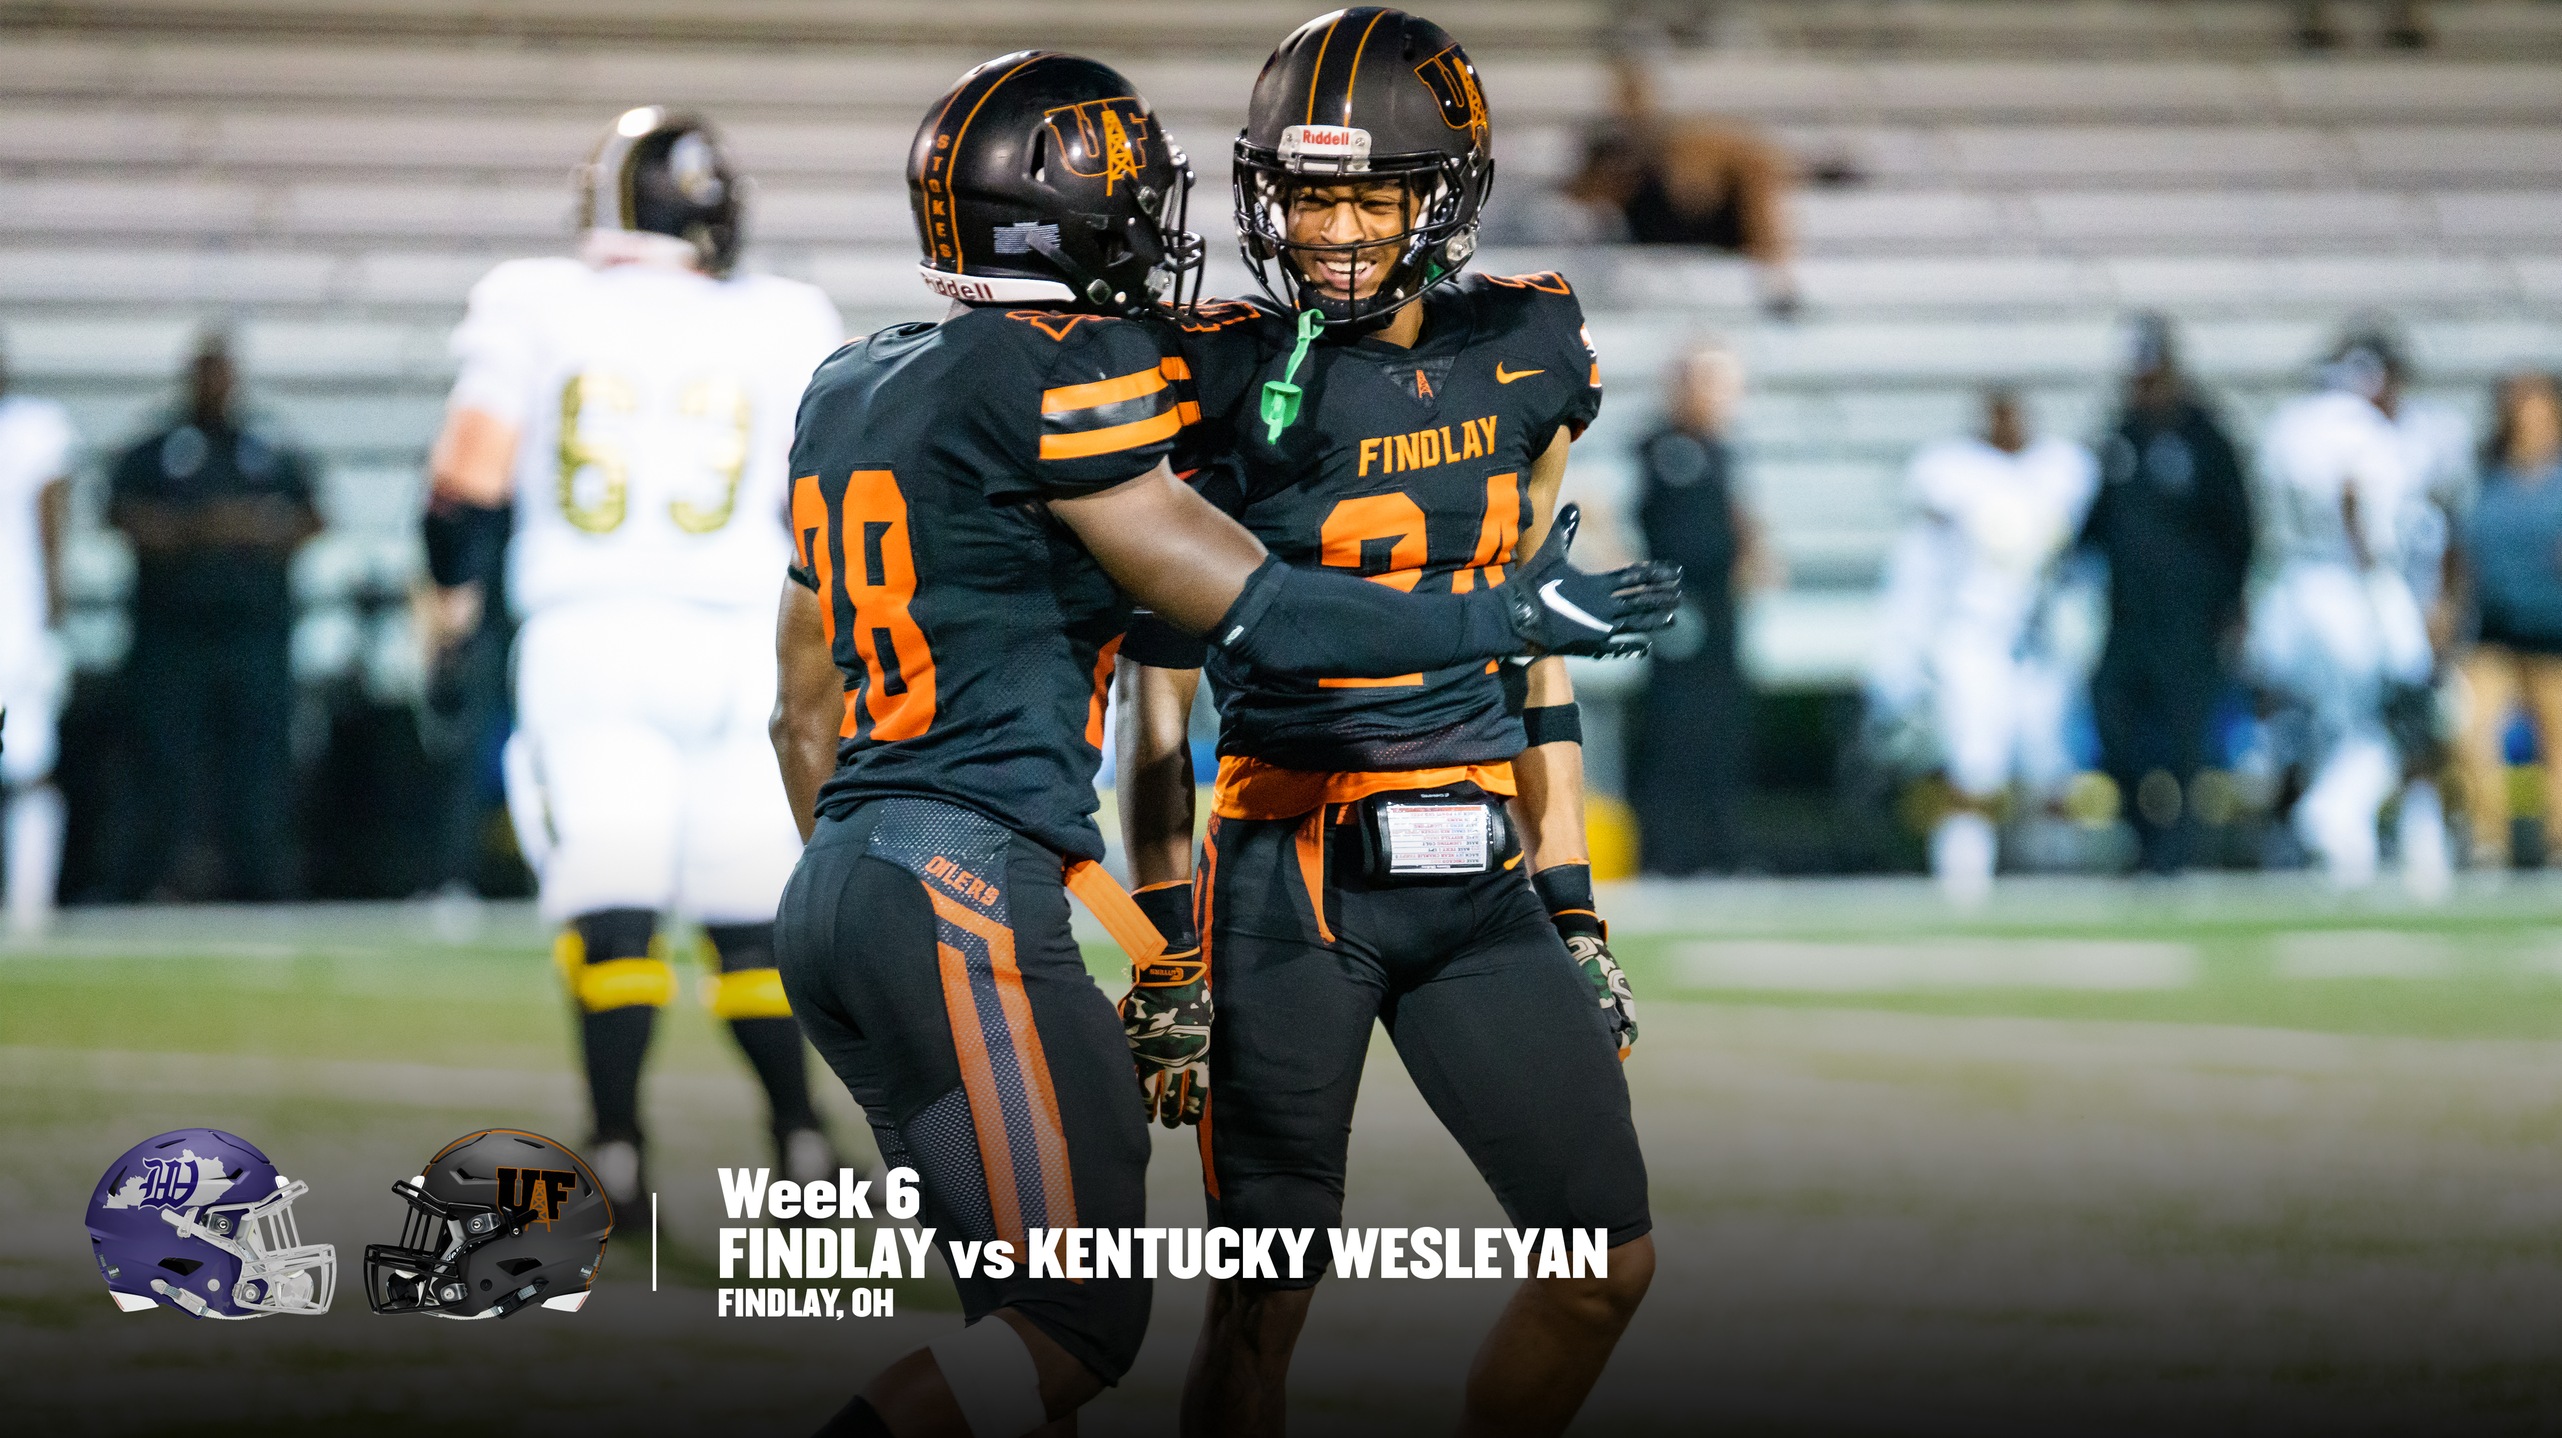 Homecoming Game | Findlay Hosts Kentucky Wesleyan at 4:00 pm